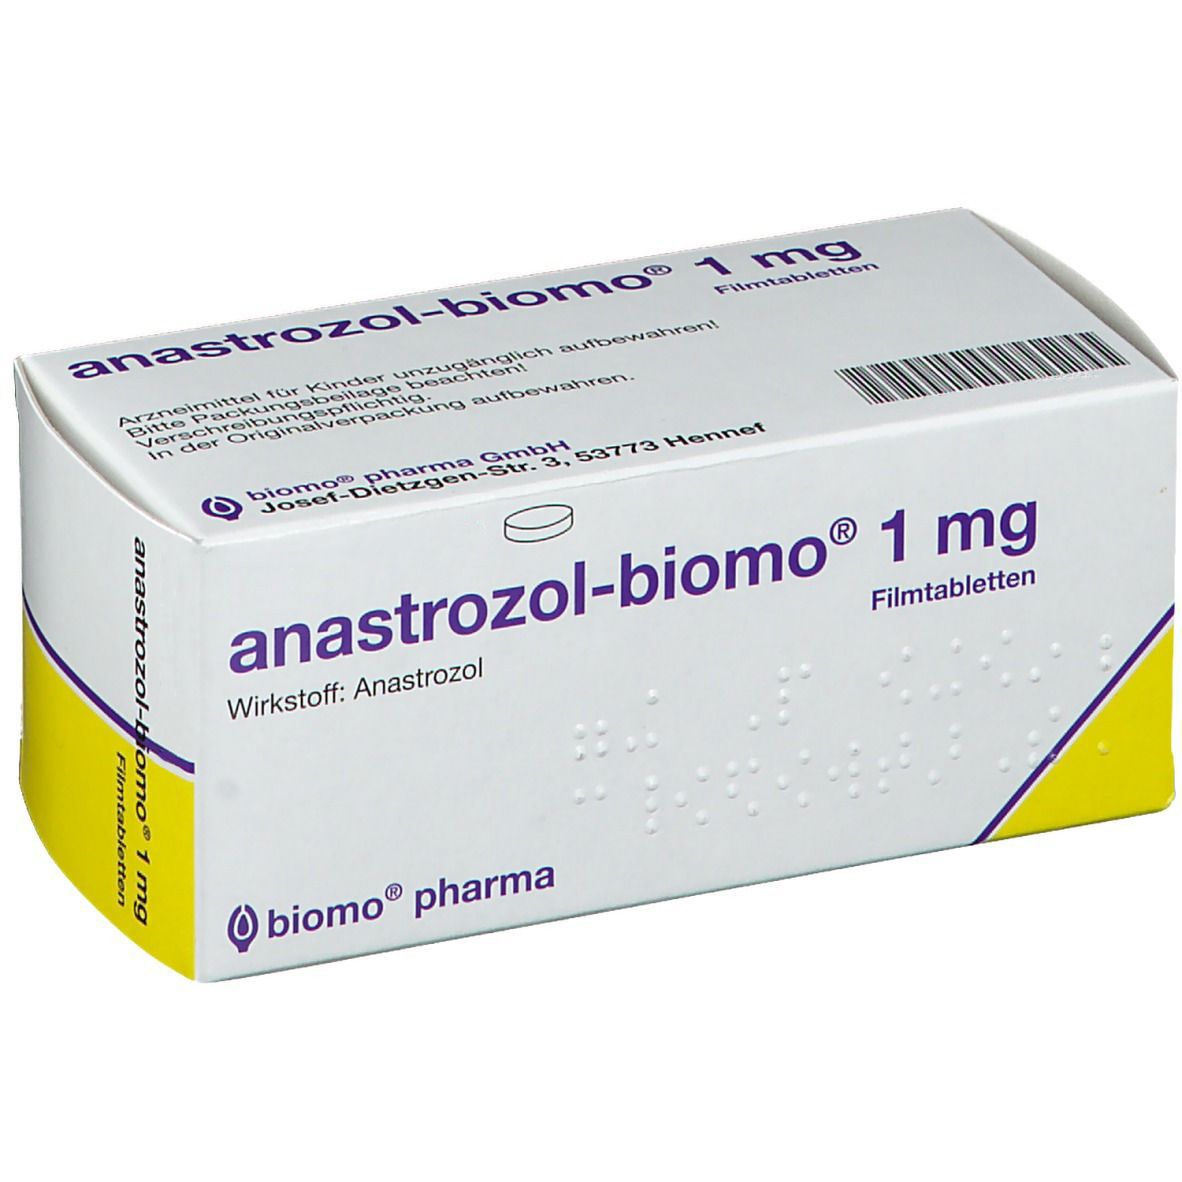 anastrozol-biomo® 1 mg